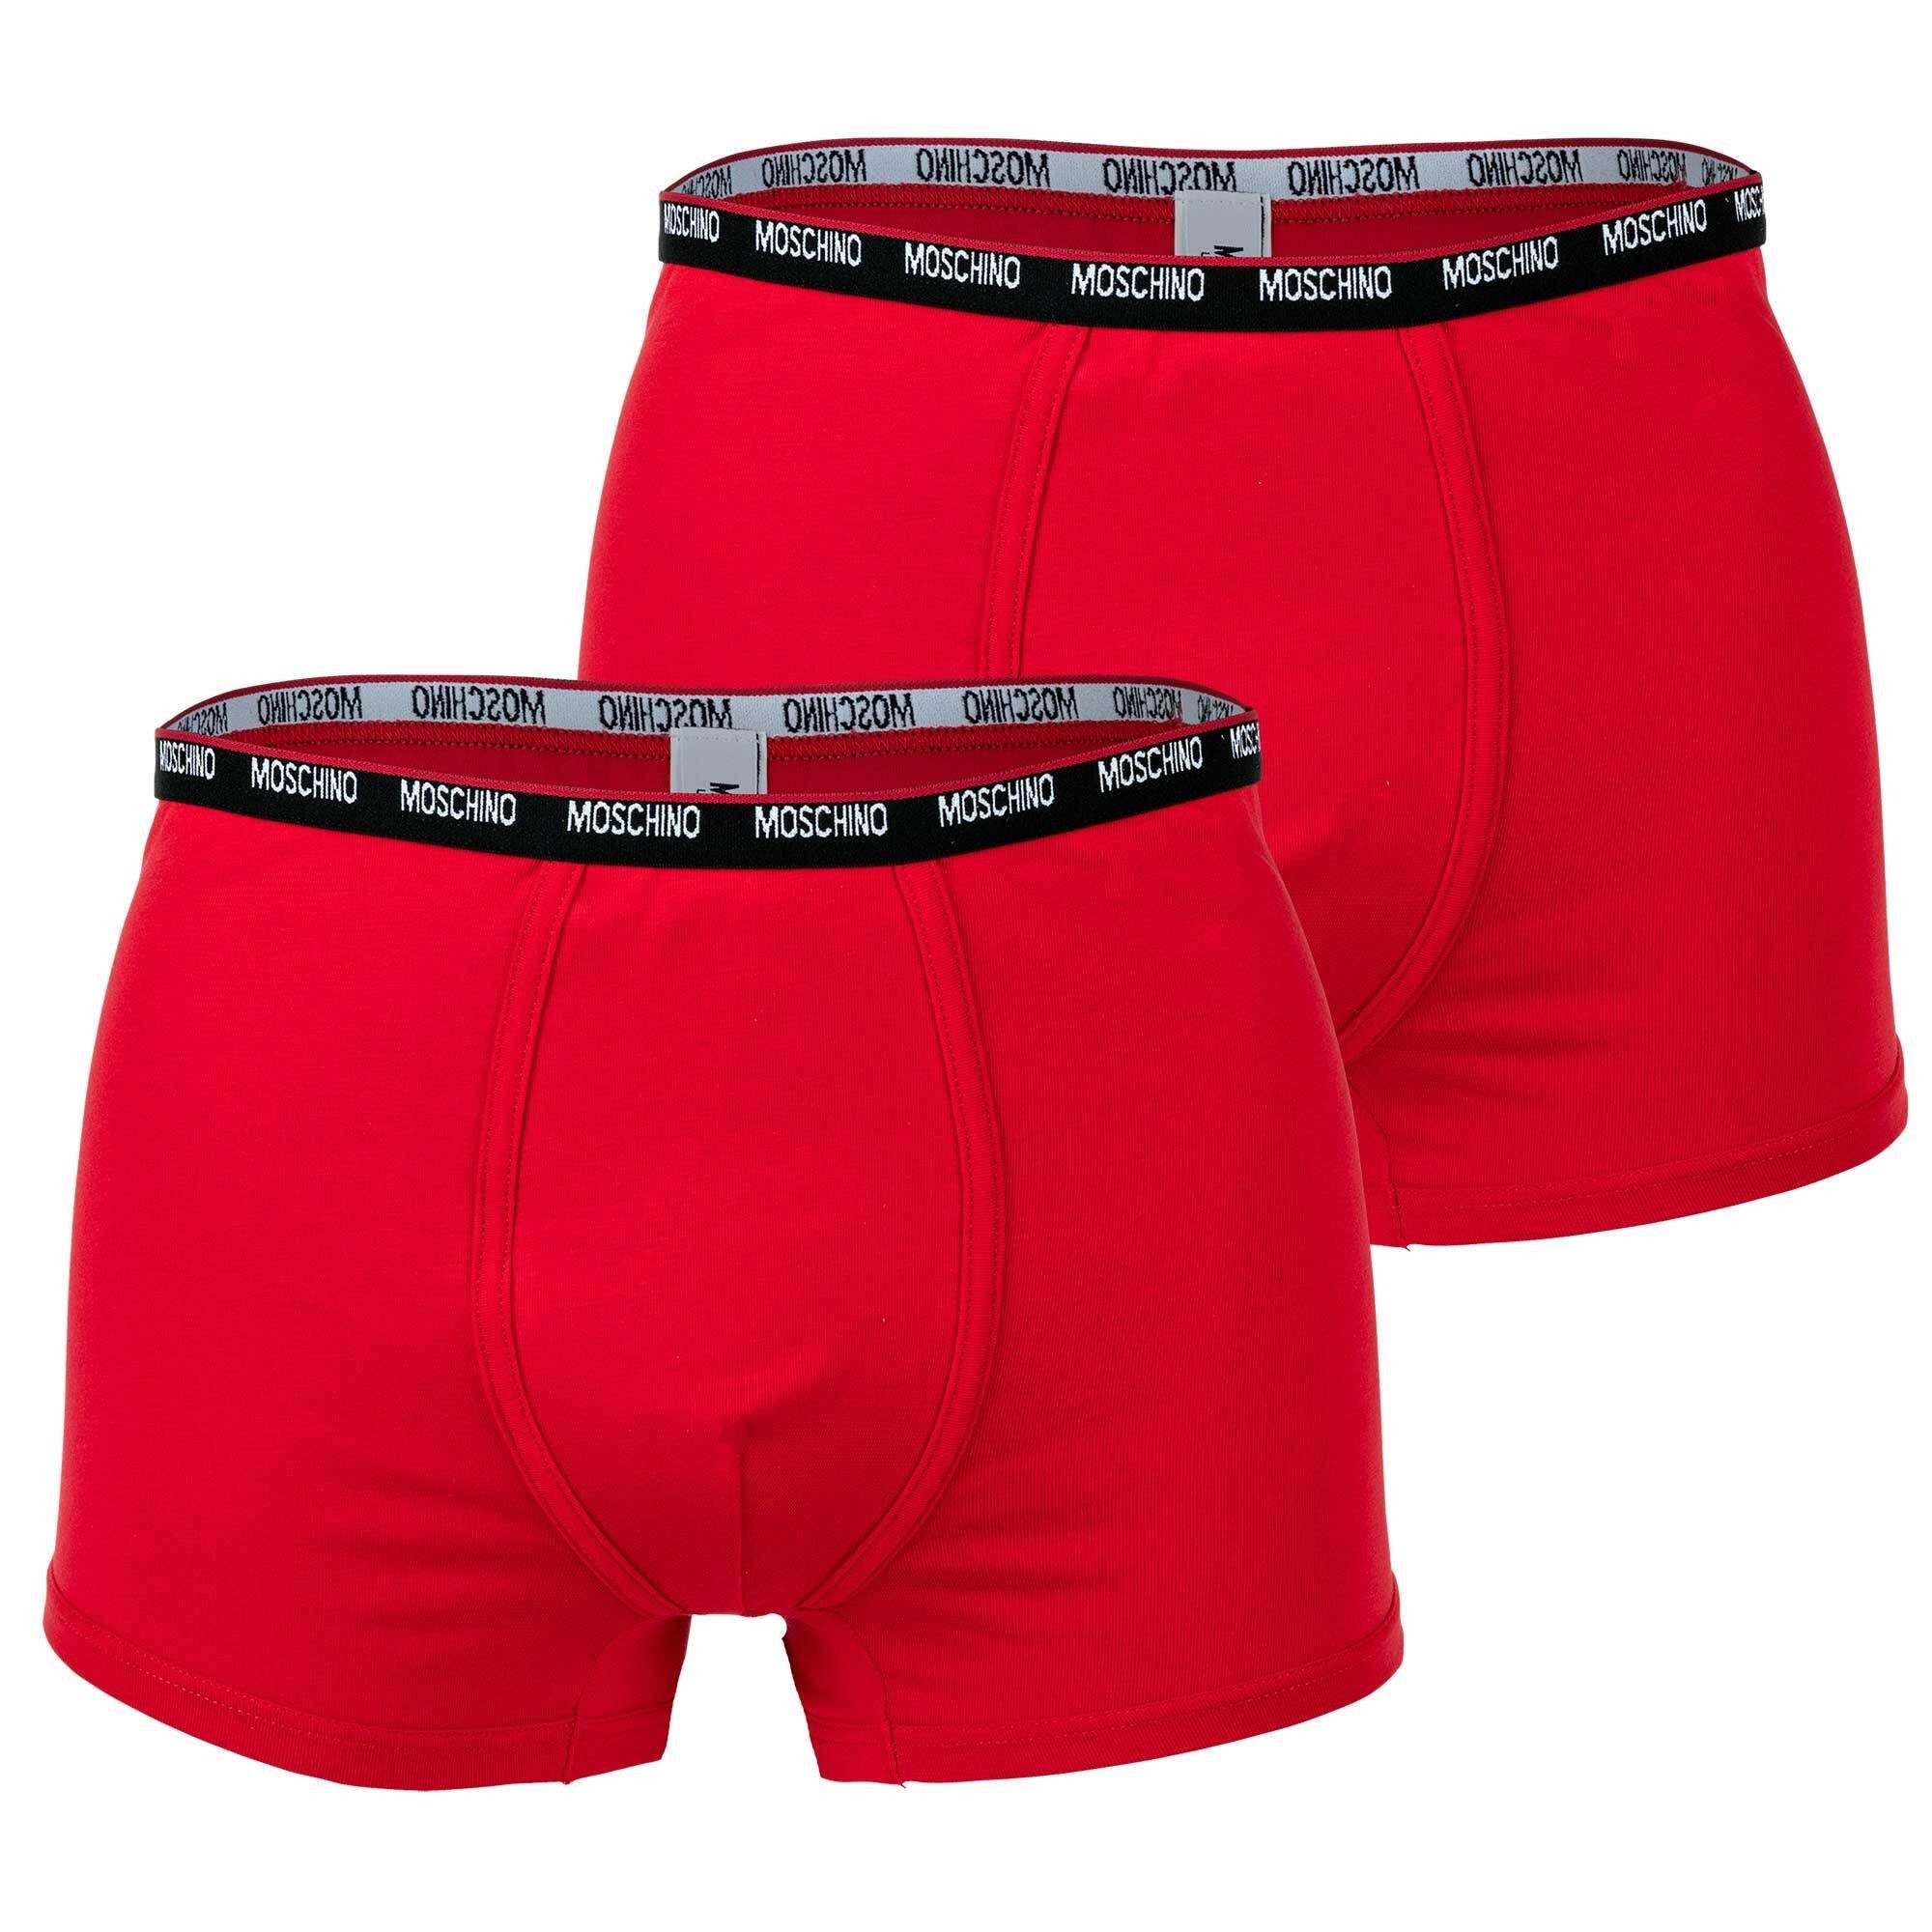 Import aus Übersee Moschino Boxer Herren Shorts - 2er Pack Rot Trunks, Cotton Unterhose